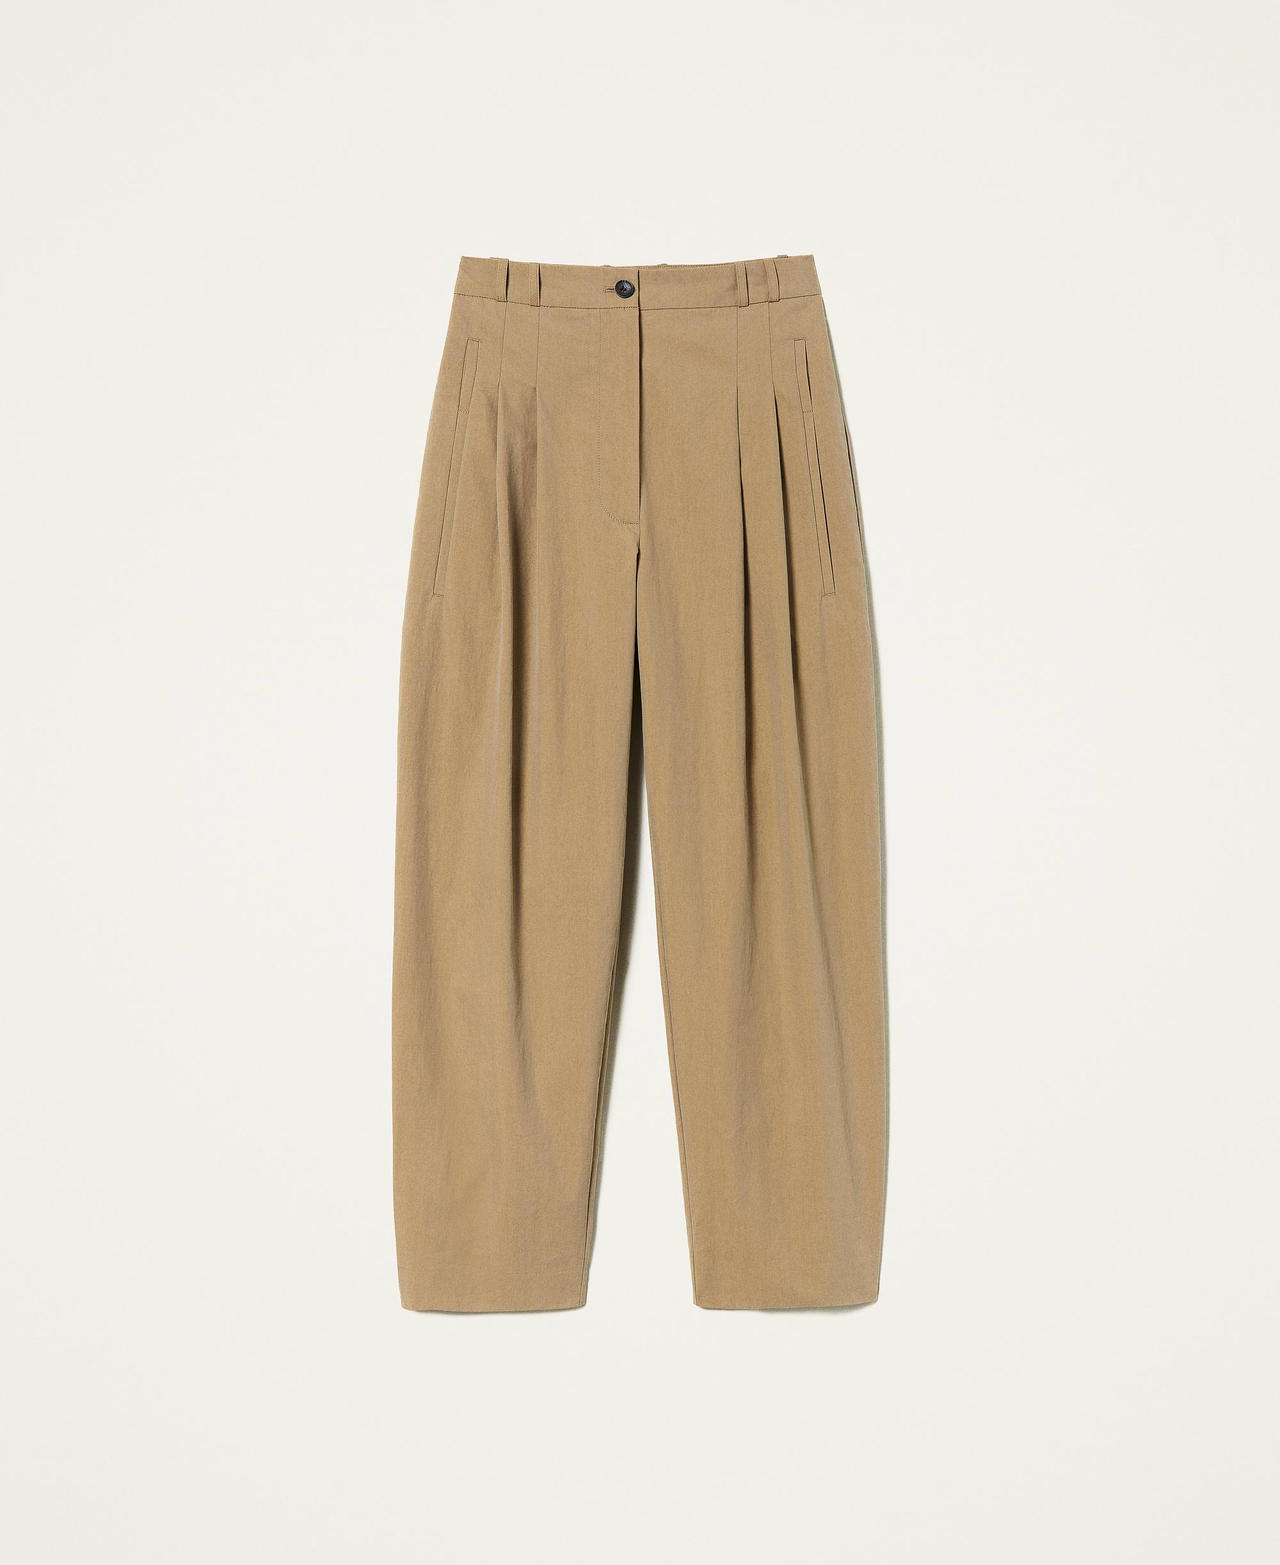 Pantalón de tela con algodón orgánico Marrón "Rustic" Mujer 221AT2402-0S